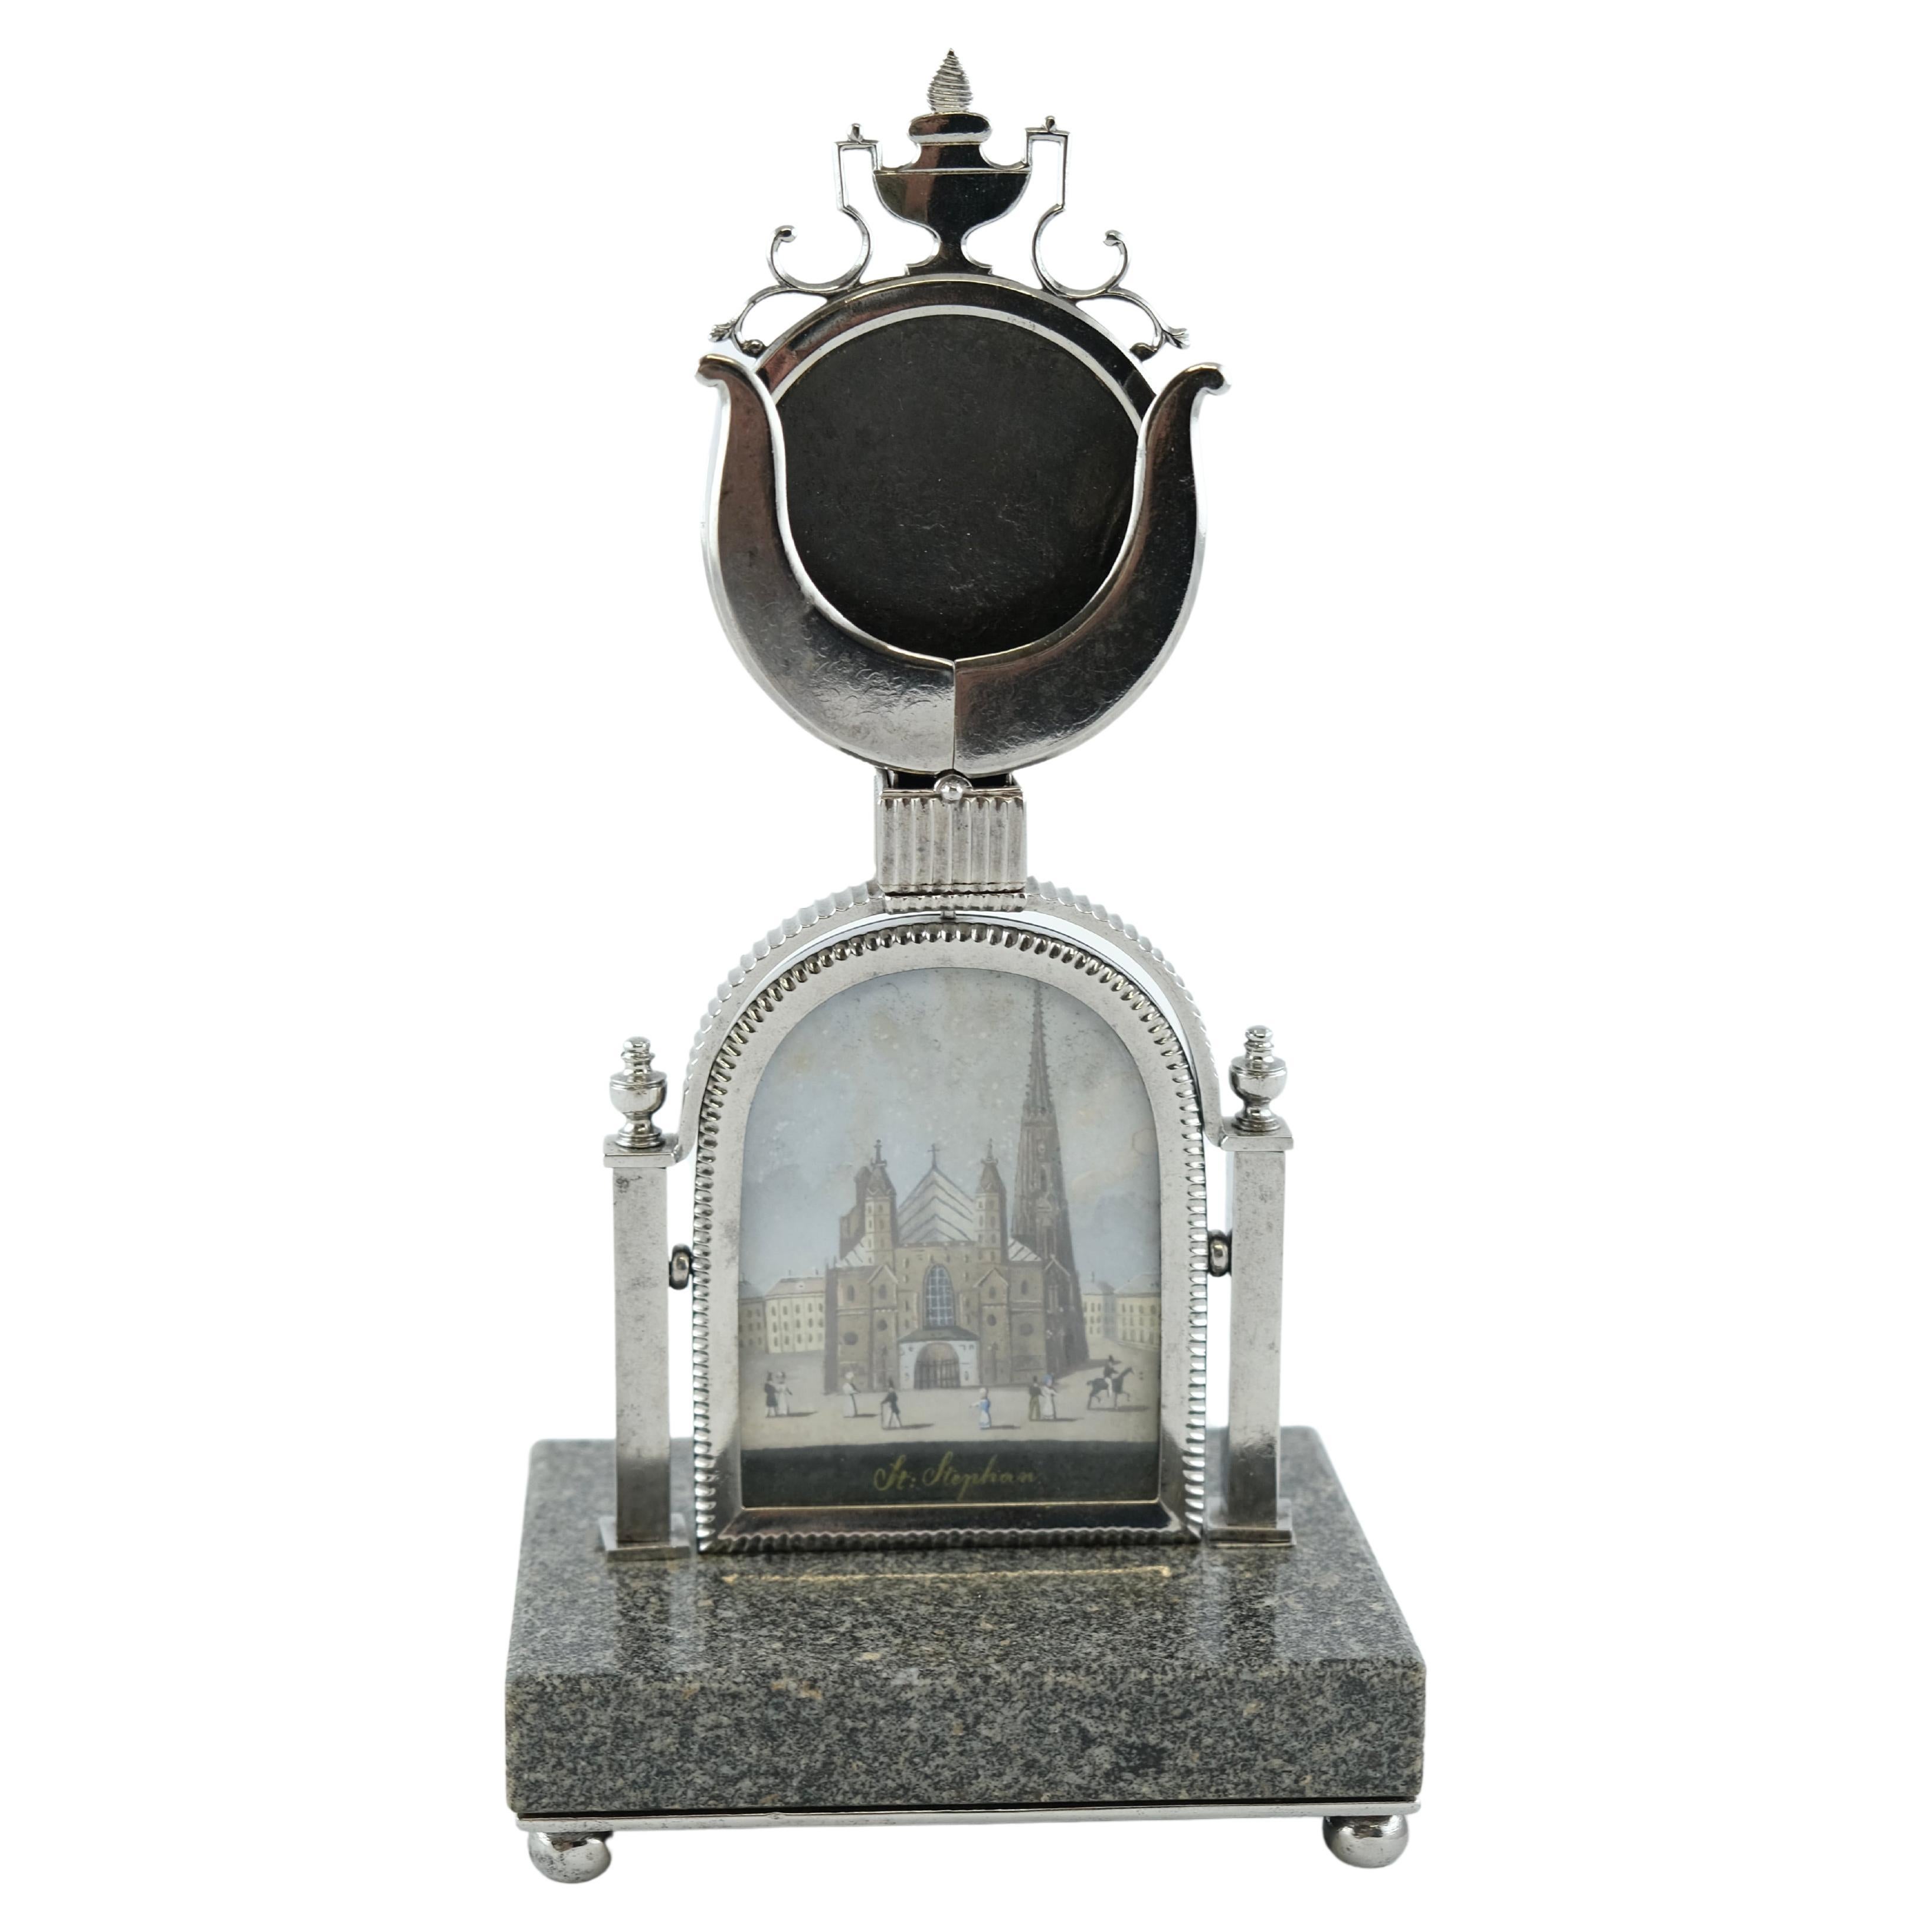 Ein österreichischer Uhrenhalter. Granit und Stahl mit einem Bild der Kuppel St. Stephans